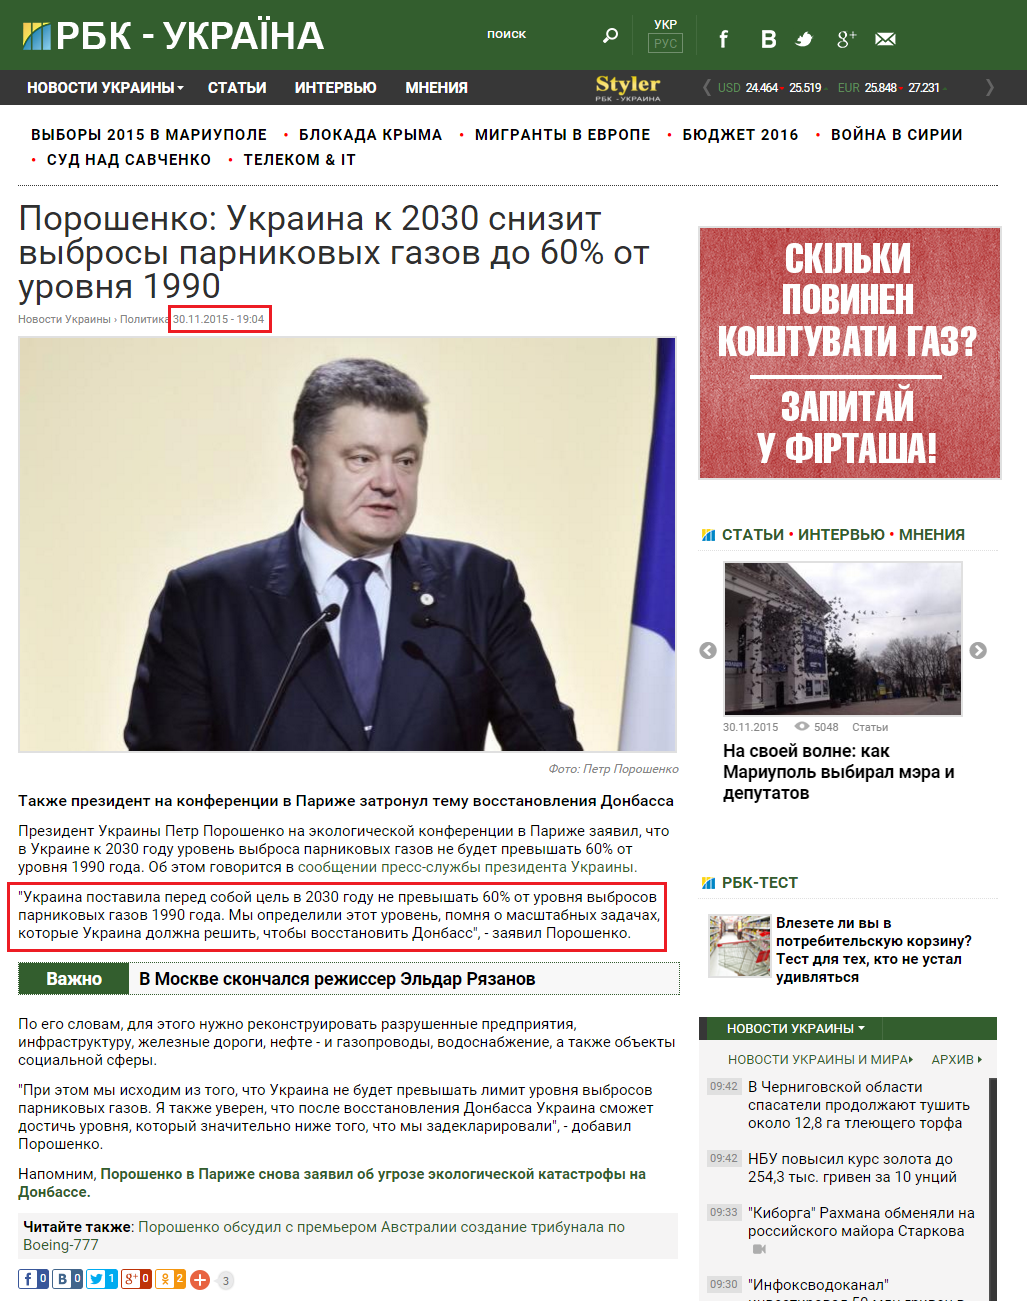 http://www.rbc.ua/rus/news/poroshenko-ukraina-2030-godu-snizit-vybrosy-1448902590.html